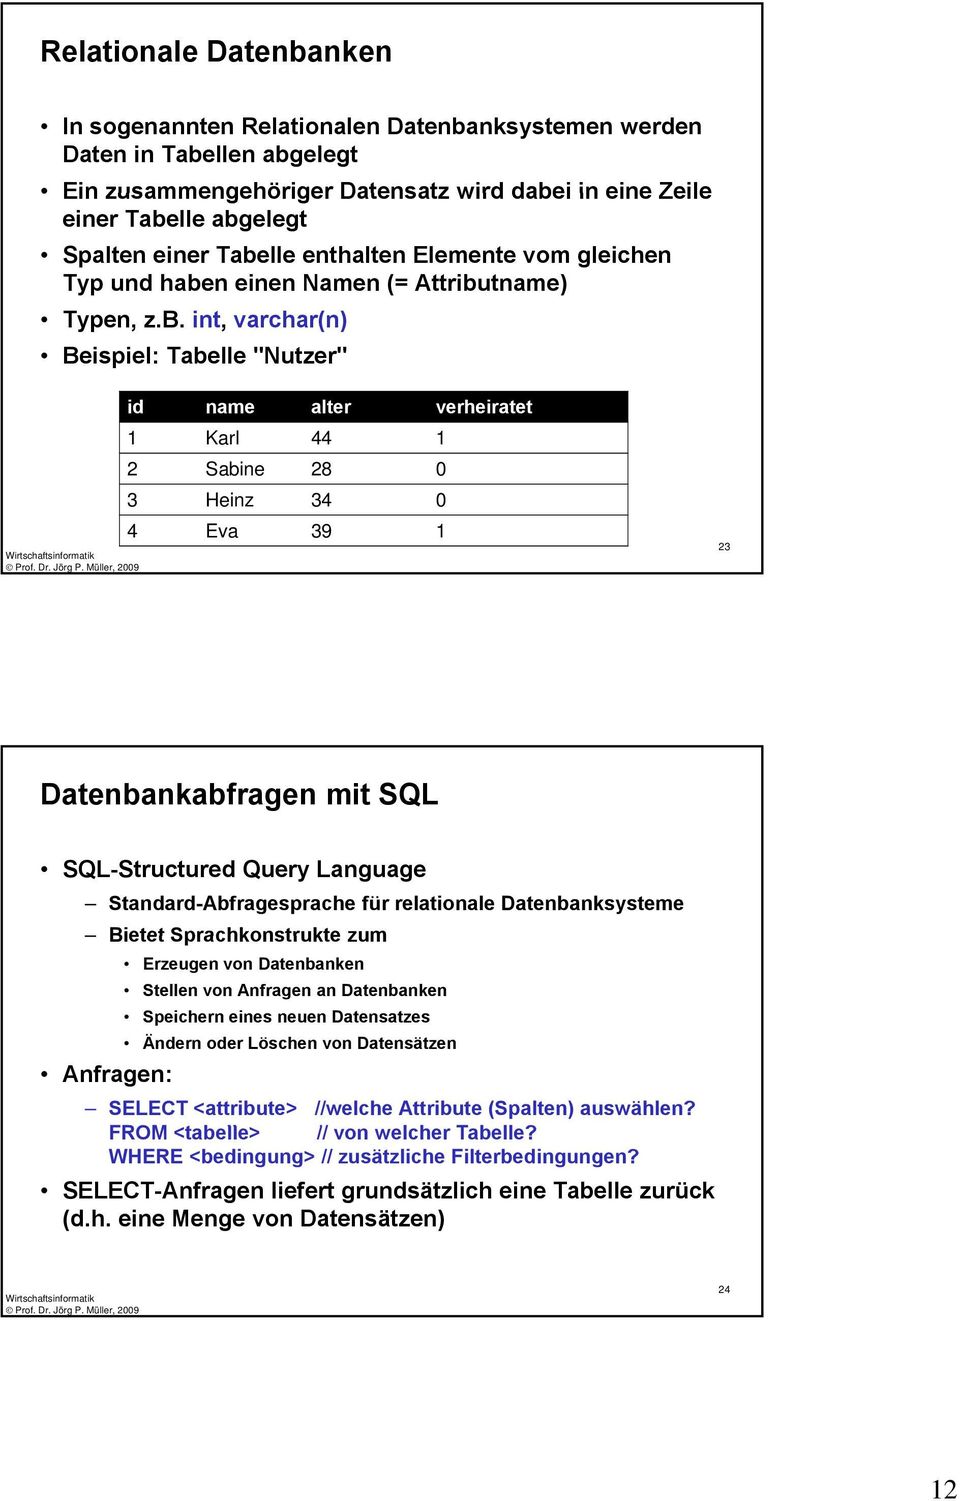 34 0 4 Eva 39 1 23 Datenbankabfragen mit SQL SQL-Structured Query Language Standard-Abfragesprache für relationale Datenbanksysteme Bietet Sprachkonstrukte zum Anfragen: Erzeugen von Datenbanken